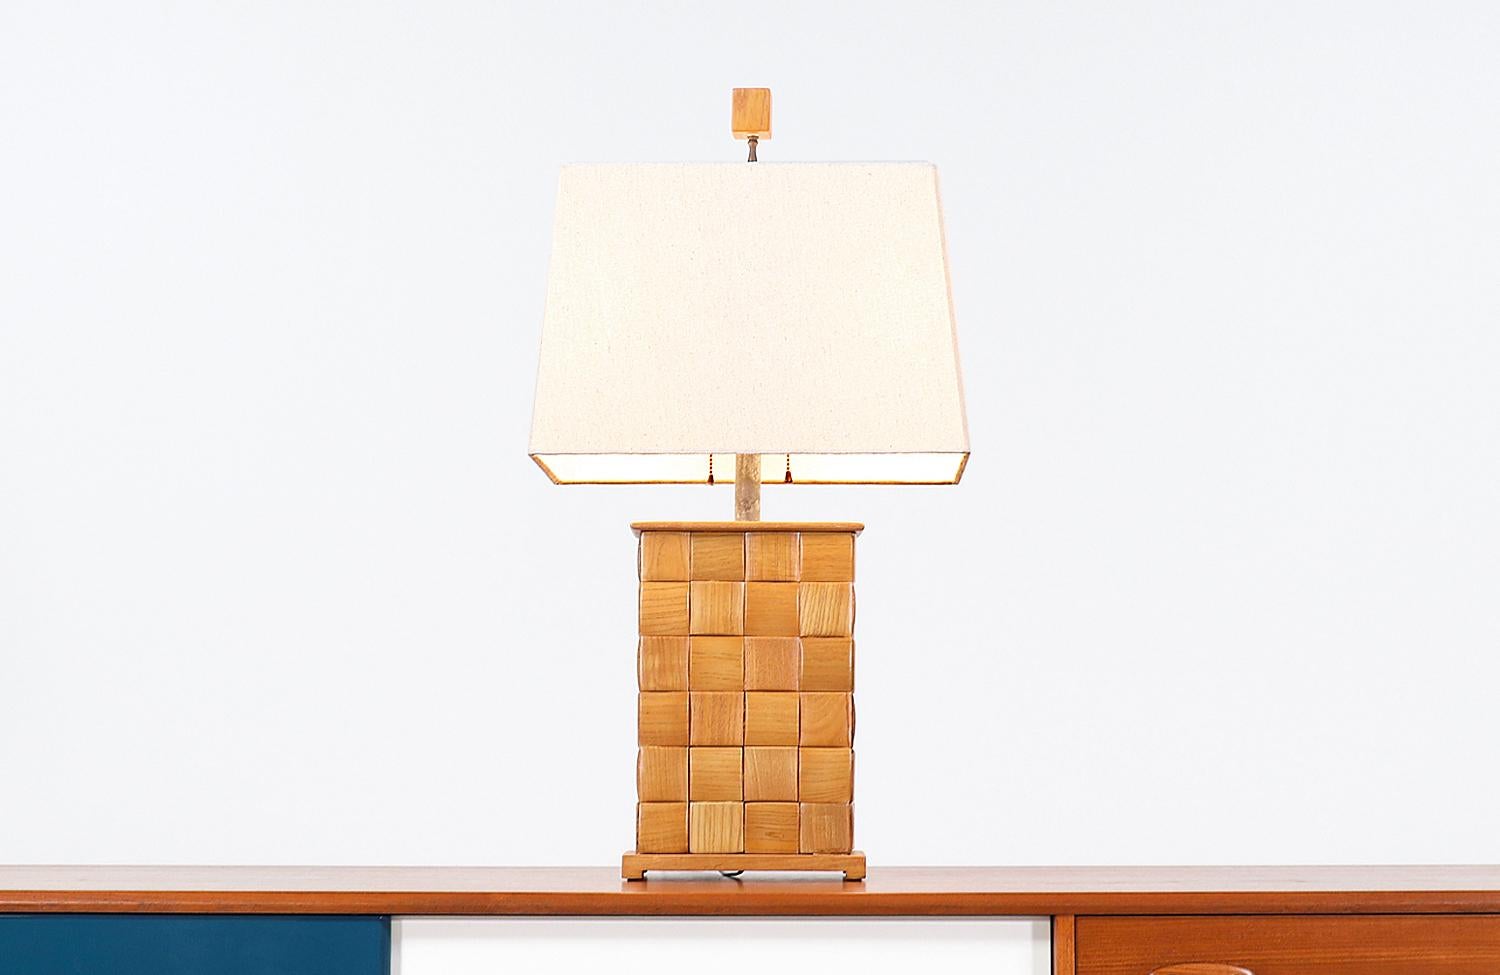 Rare lampe de table moderne californienne conçue par Paul Laszlo pour Brown Saltman aux États-Unis vers les années 1950. Cette lampe spectaculaire présente un corps en bois de chêne avec le motif de poitrine caractéristique de Laszlo, que l'on